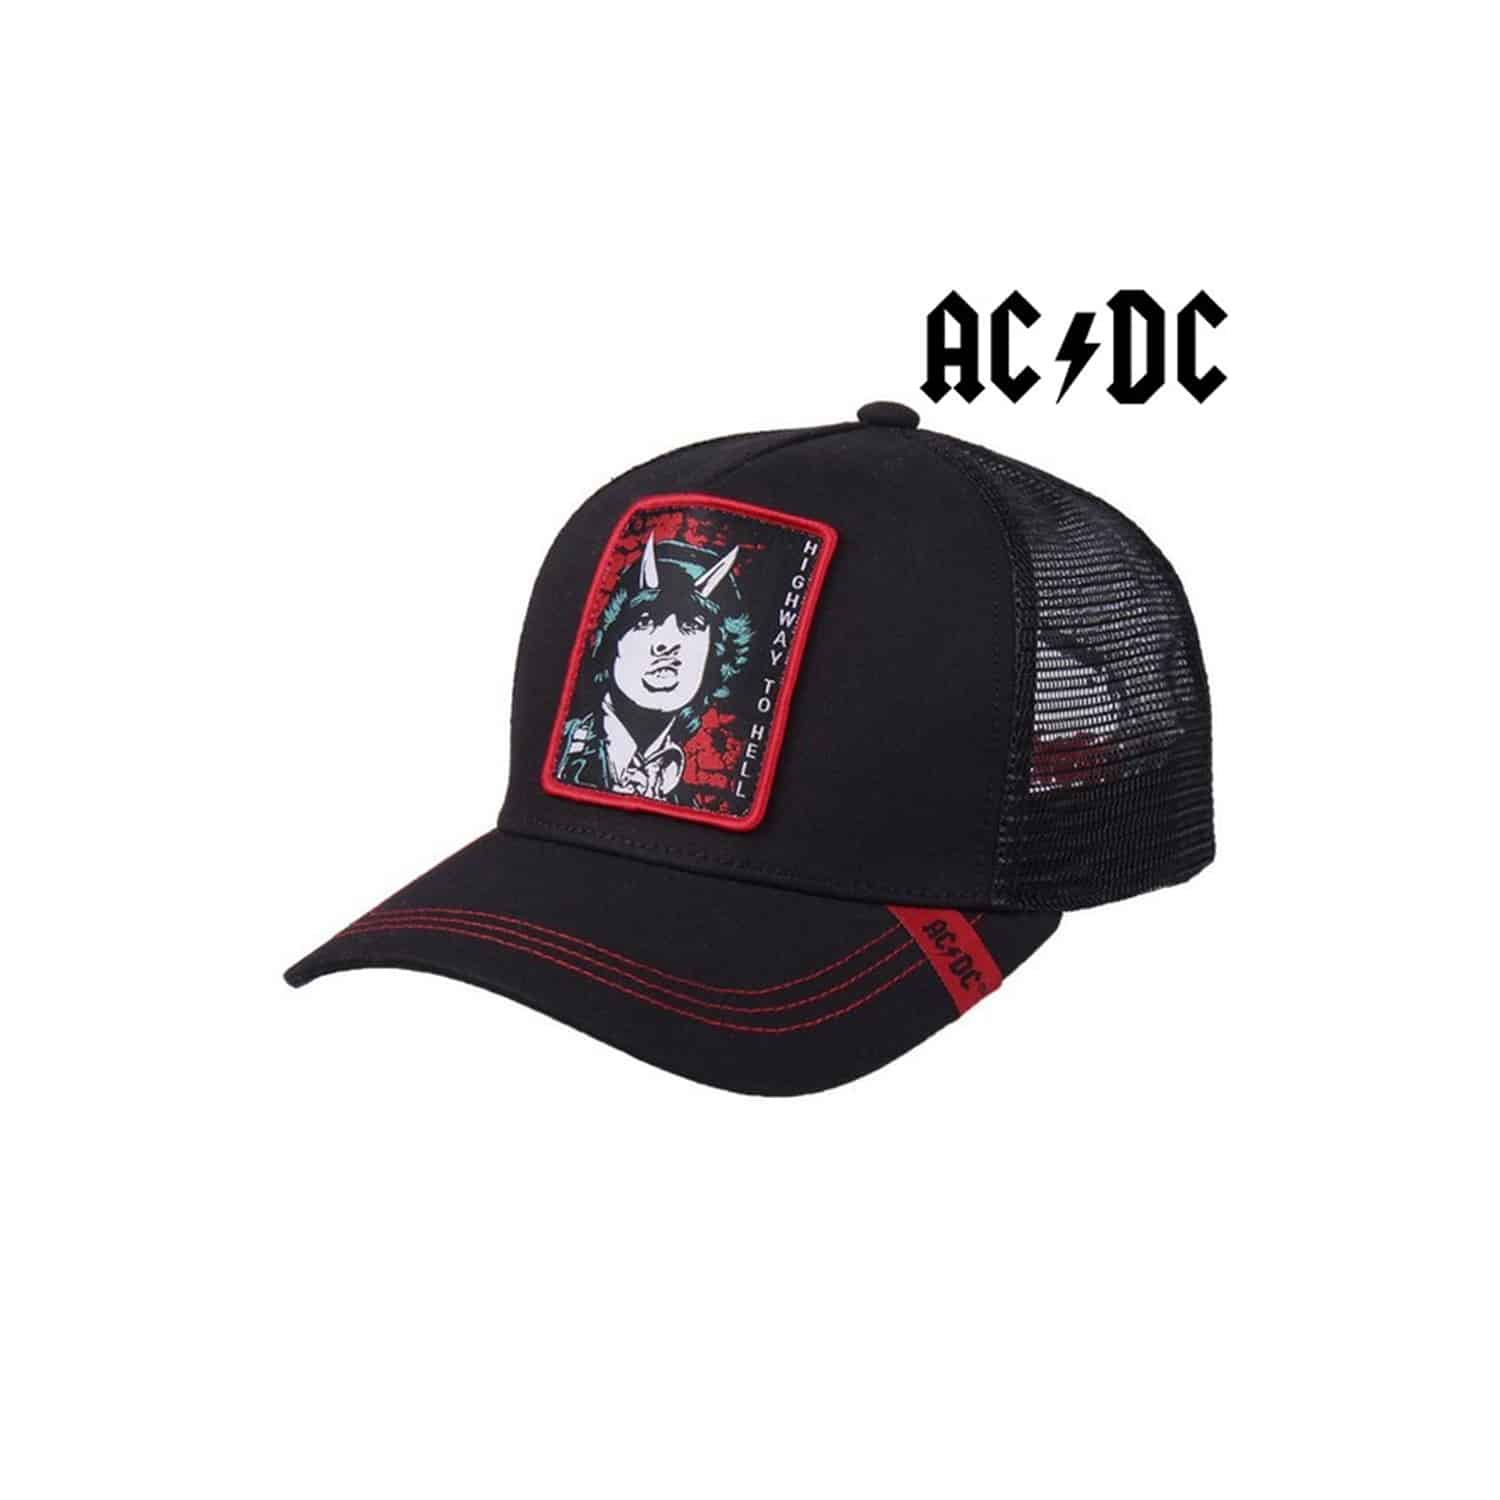 AC/DC Premium Cap